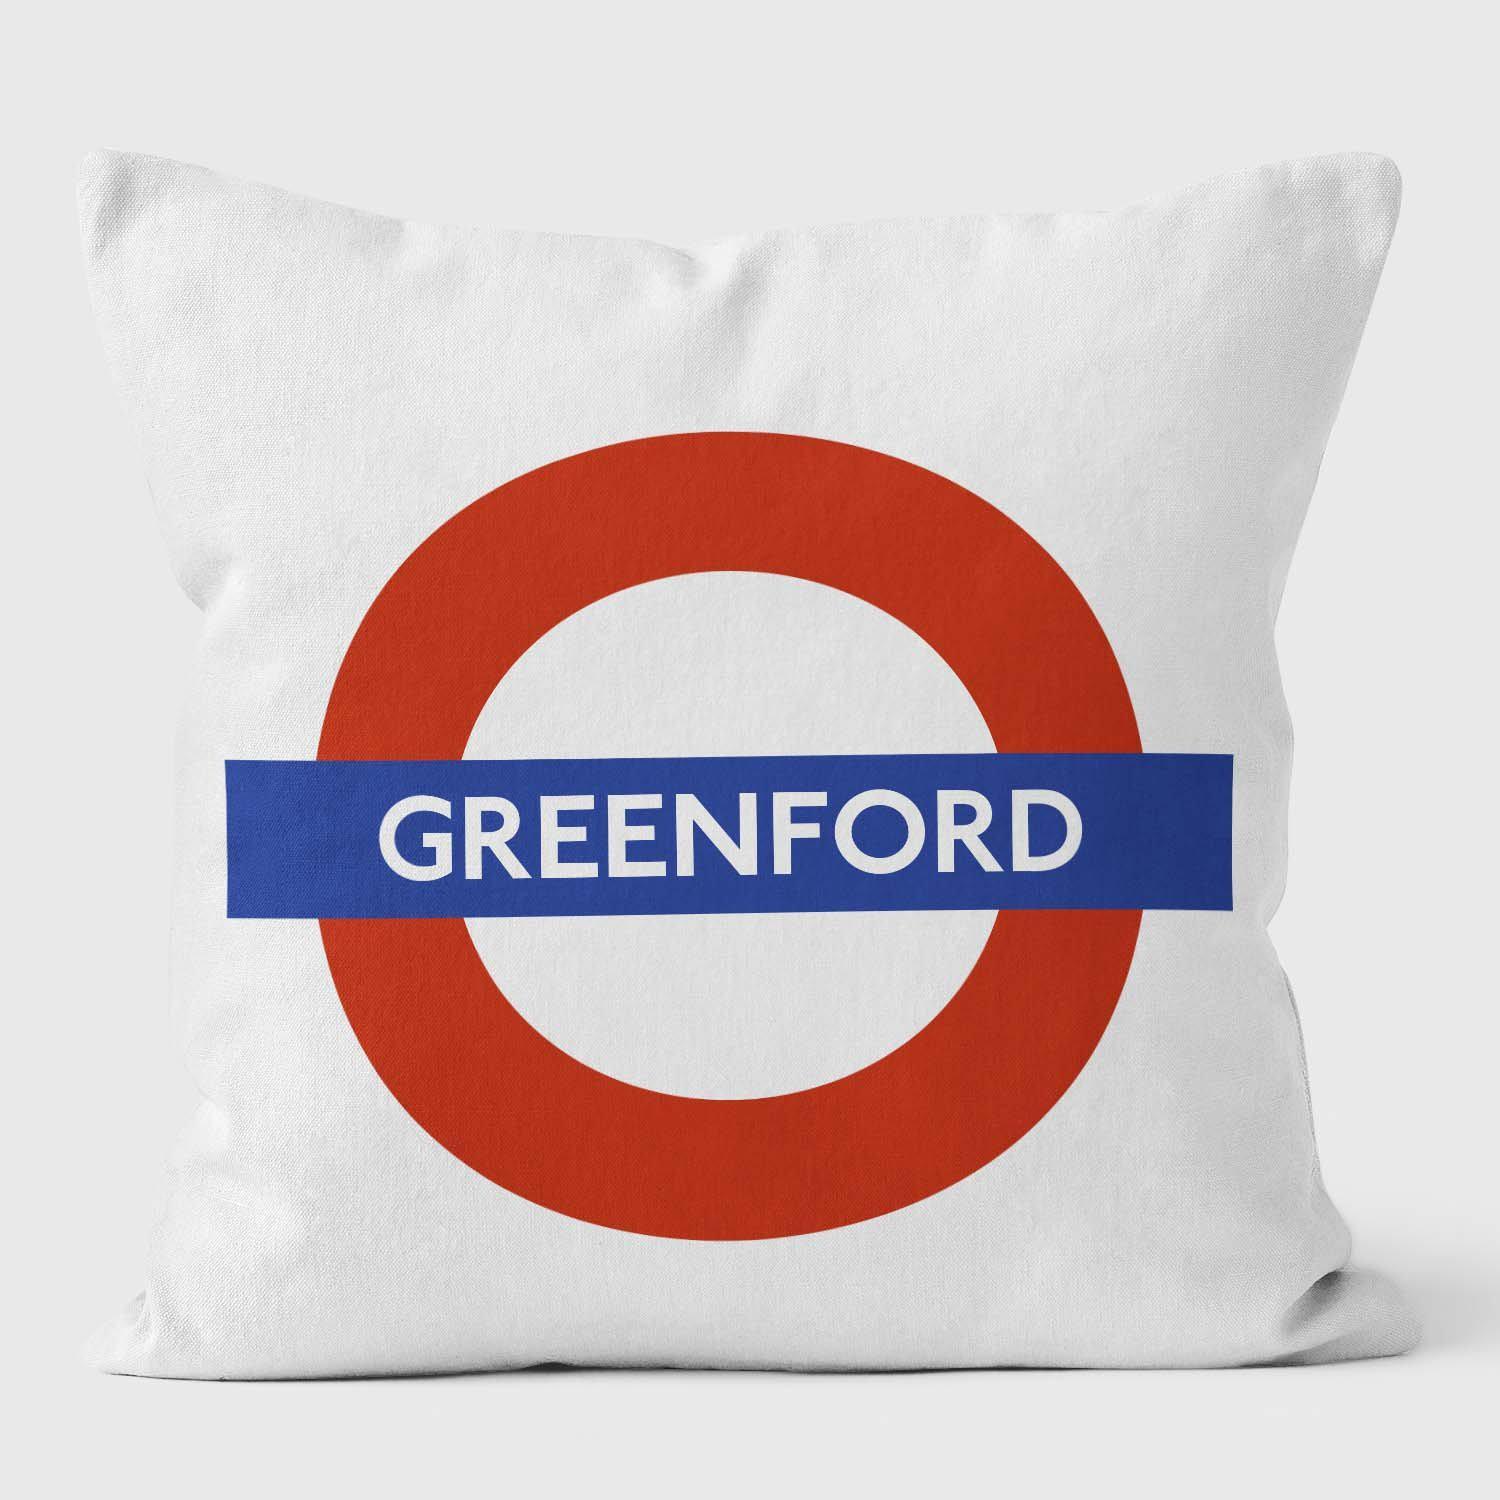 Greenford London Underground Tube Station Roundel Cushion - Handmade Cushions UK - WeLoveCushions